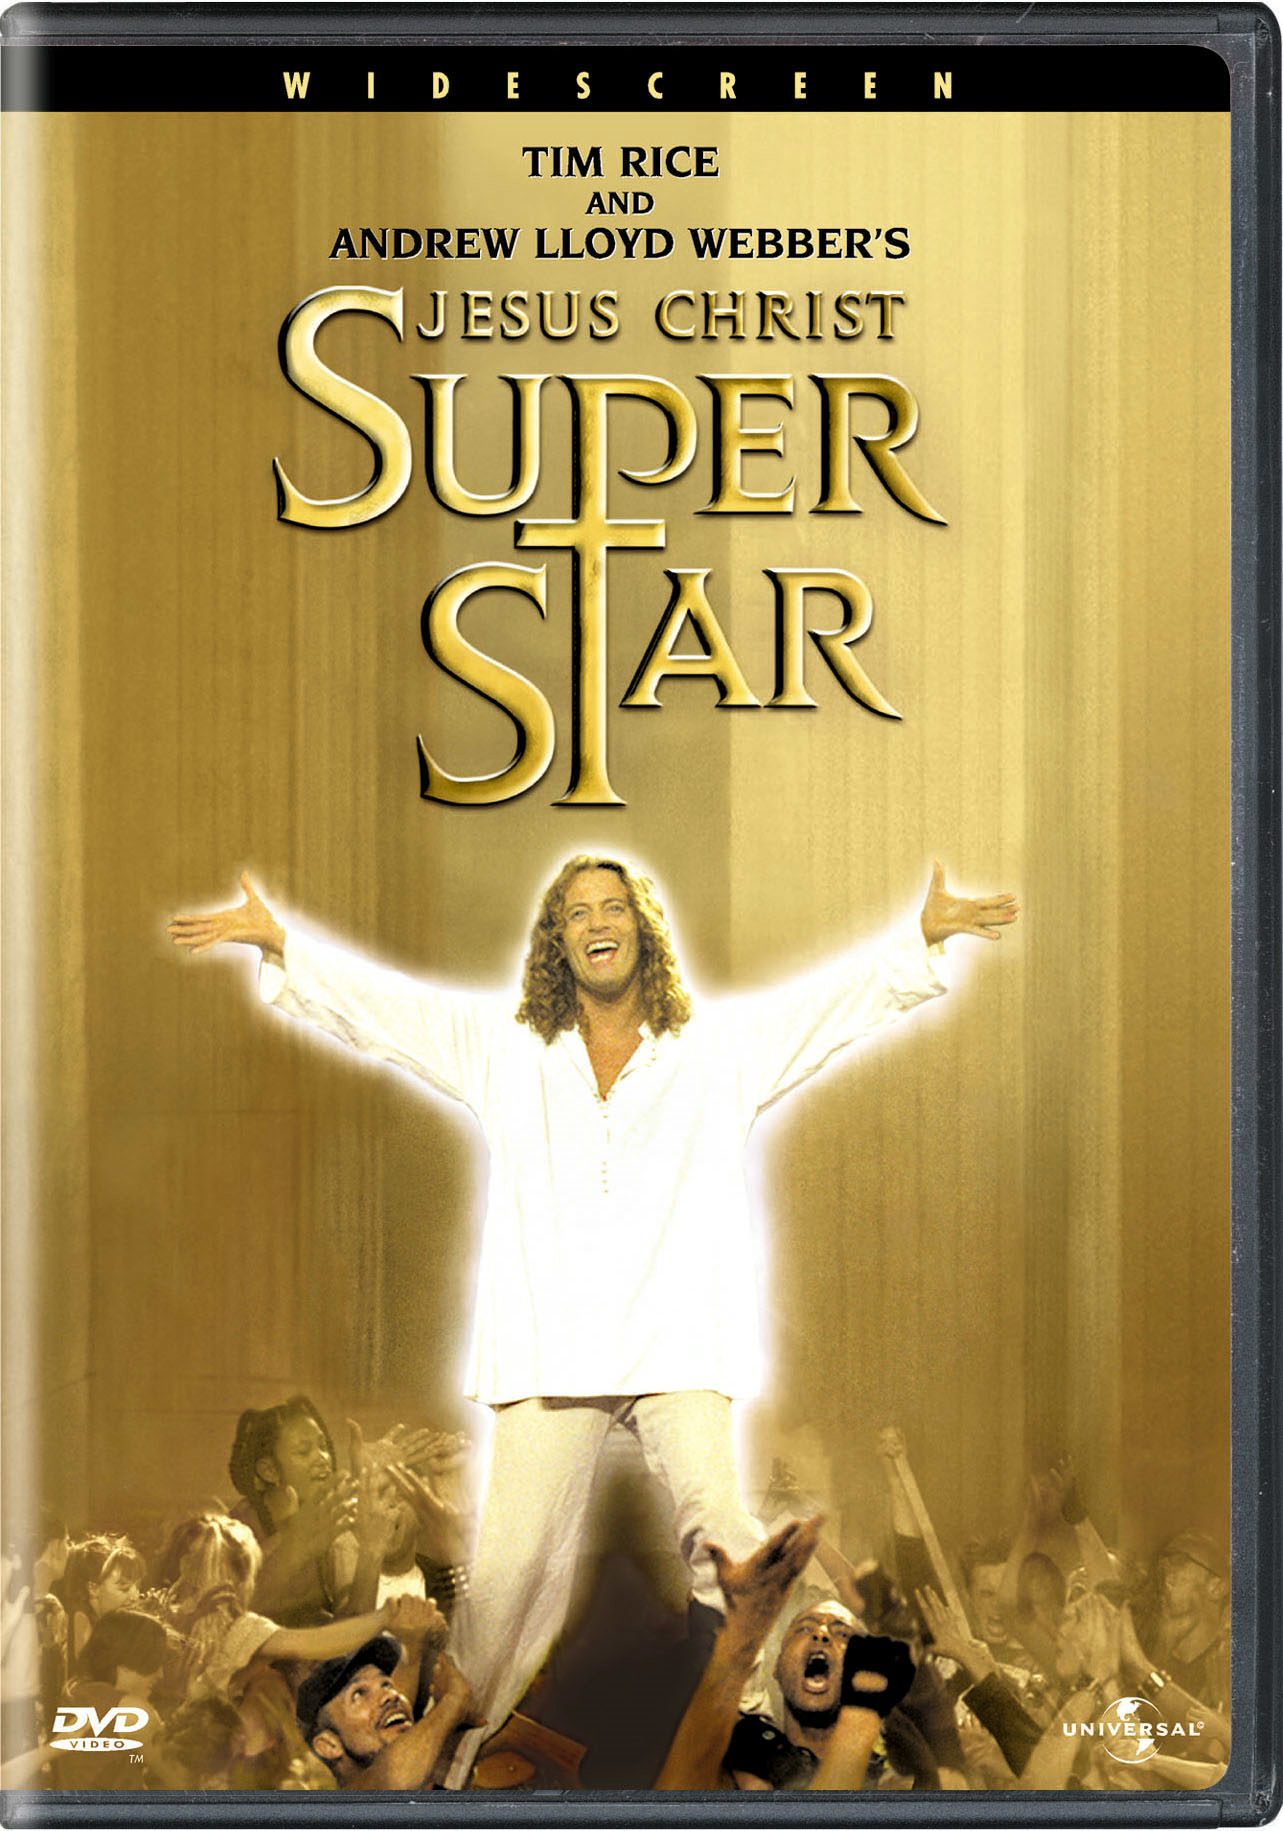 Jesus Christ Superstar - DVD   - Stage Musicals Music On DVD